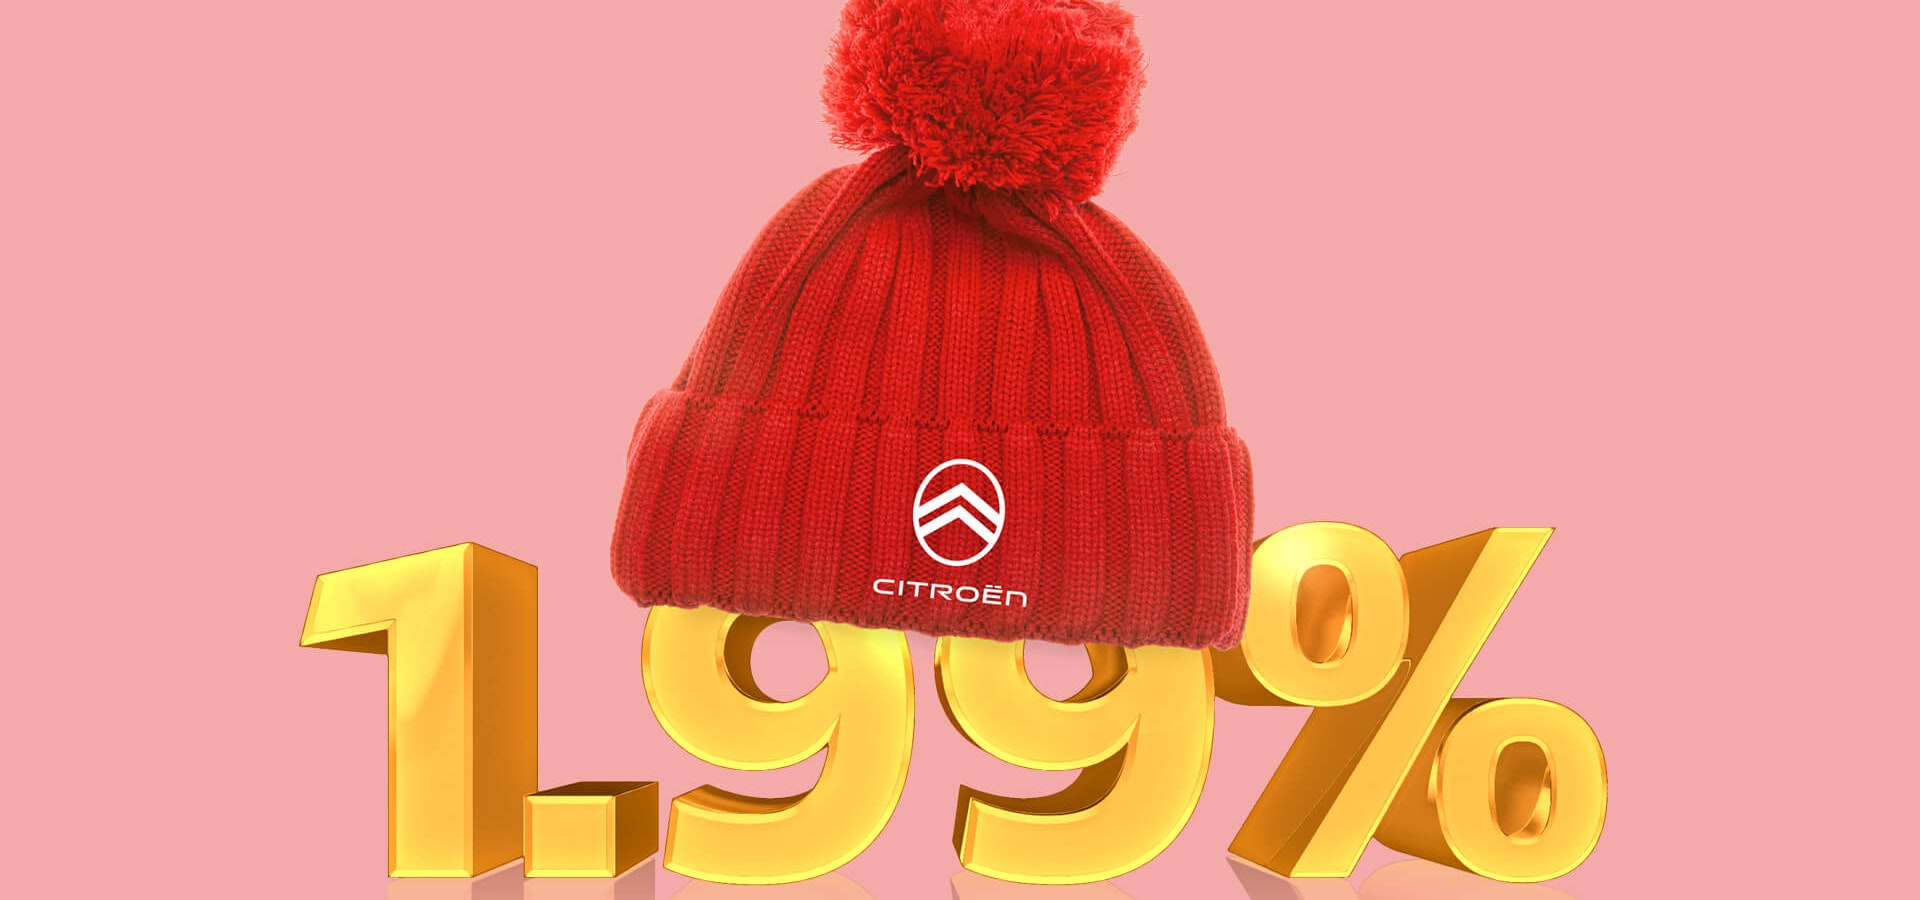 Rote Citroën Mütze